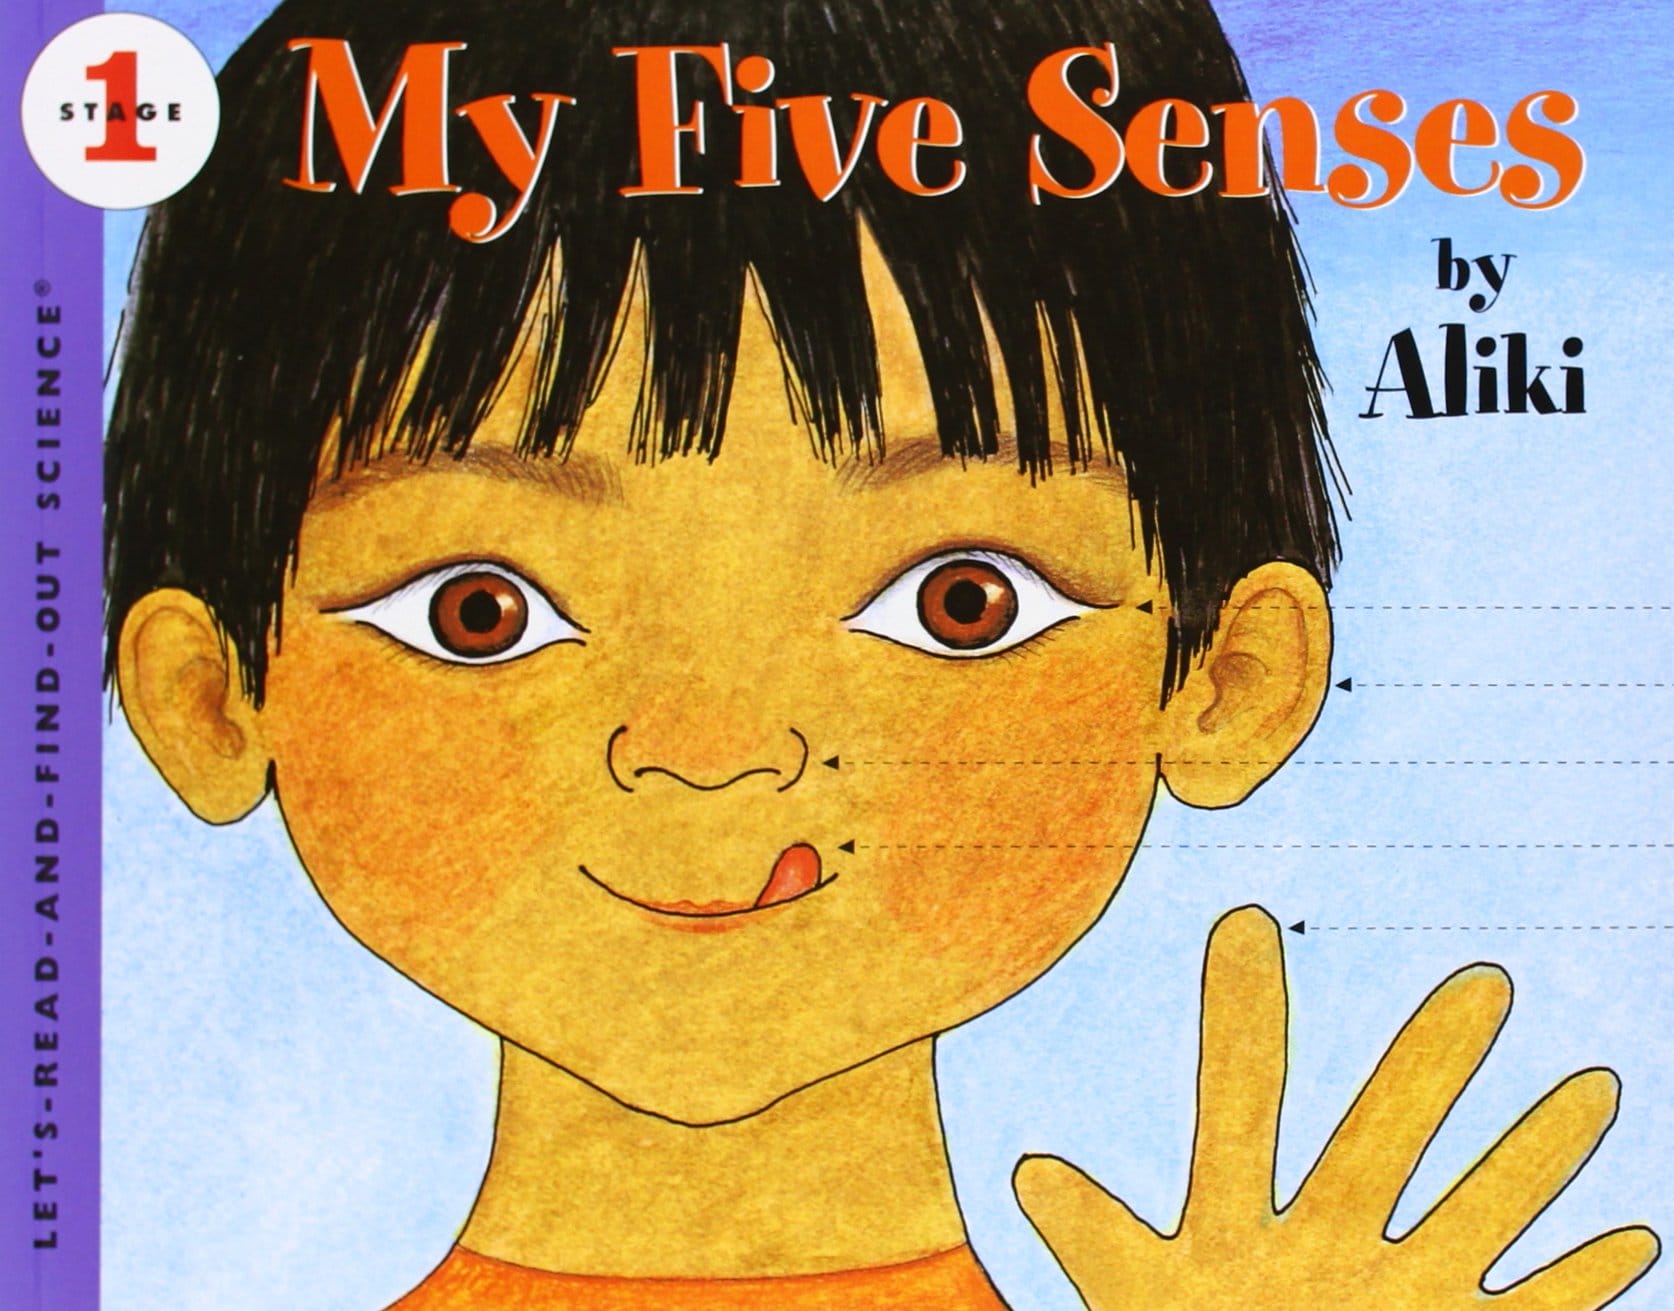 five sense by aliki